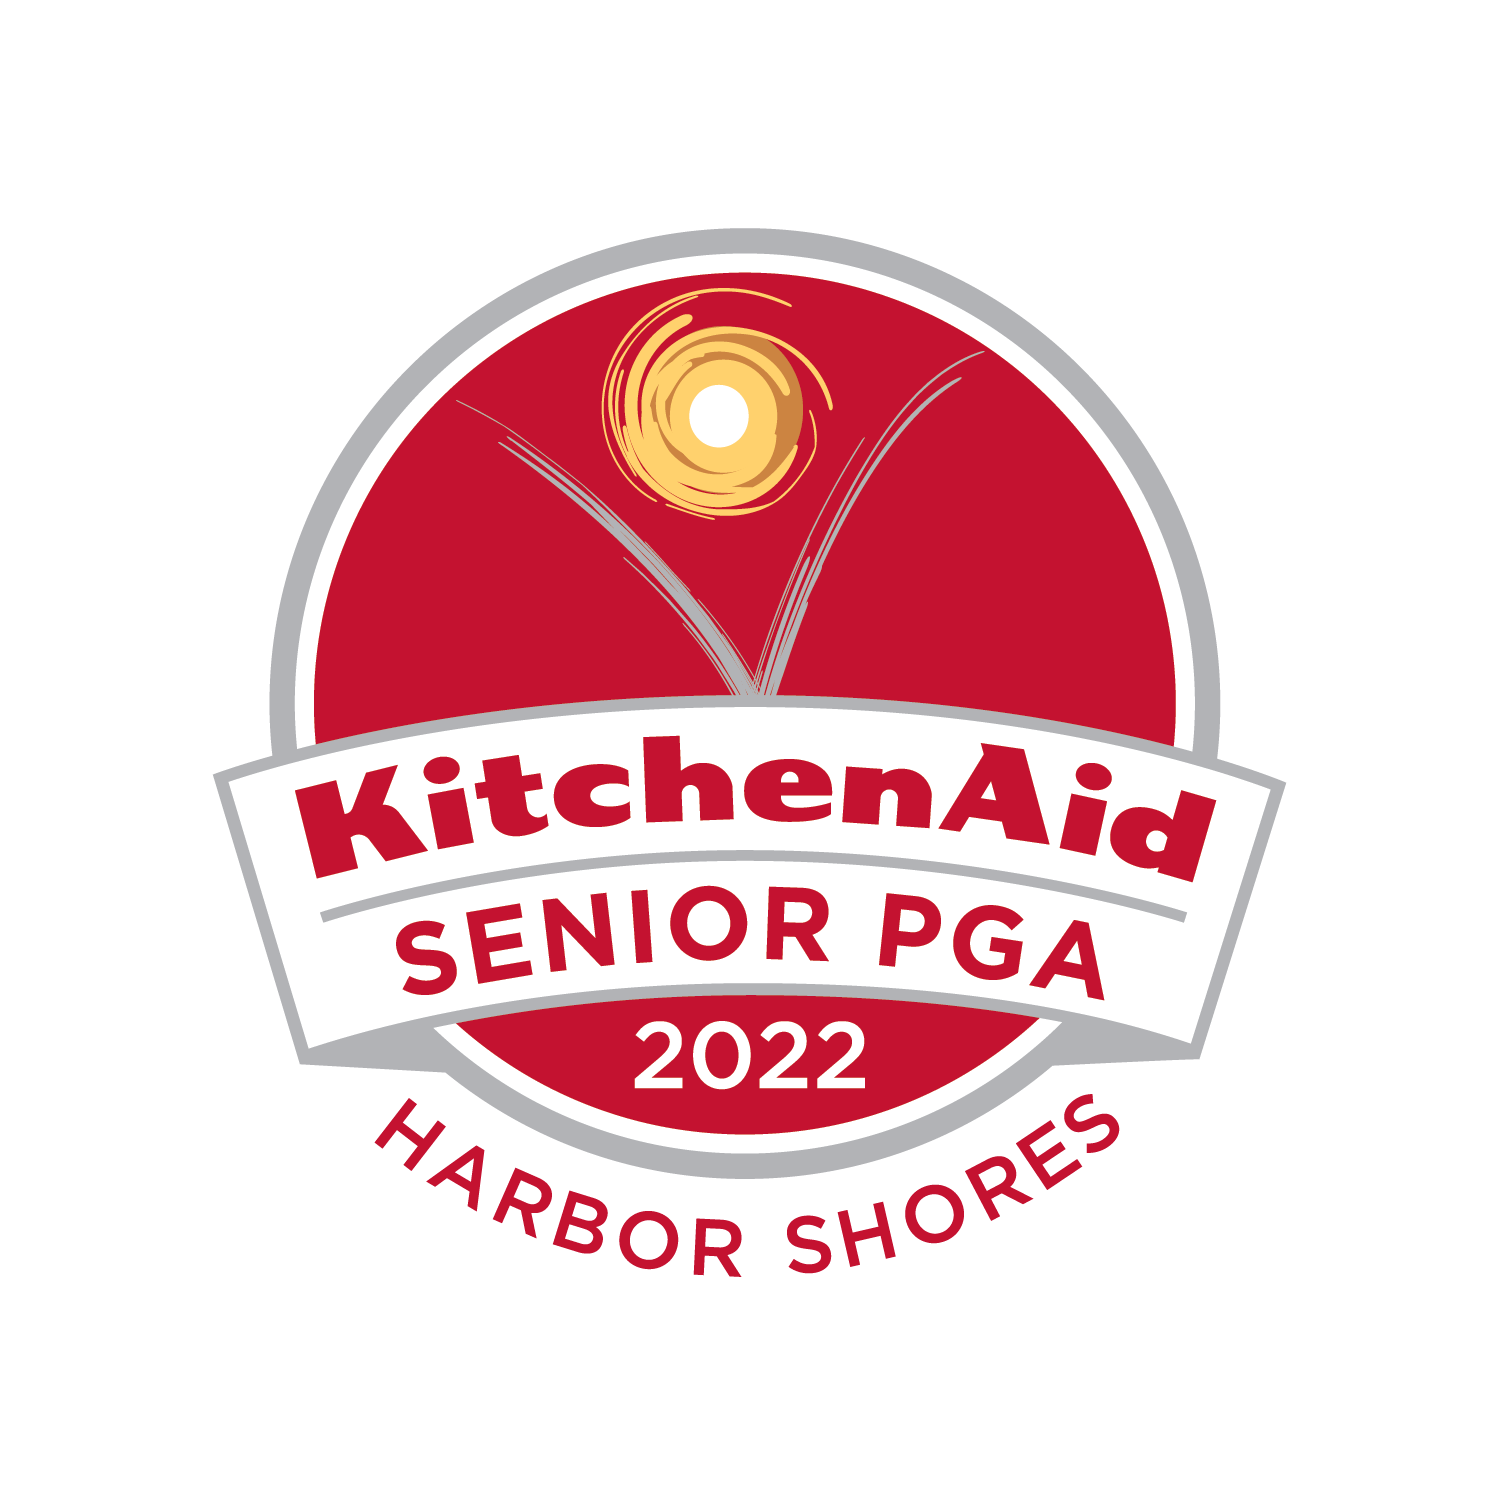 KitchenAid Senior PGA Championship Logo